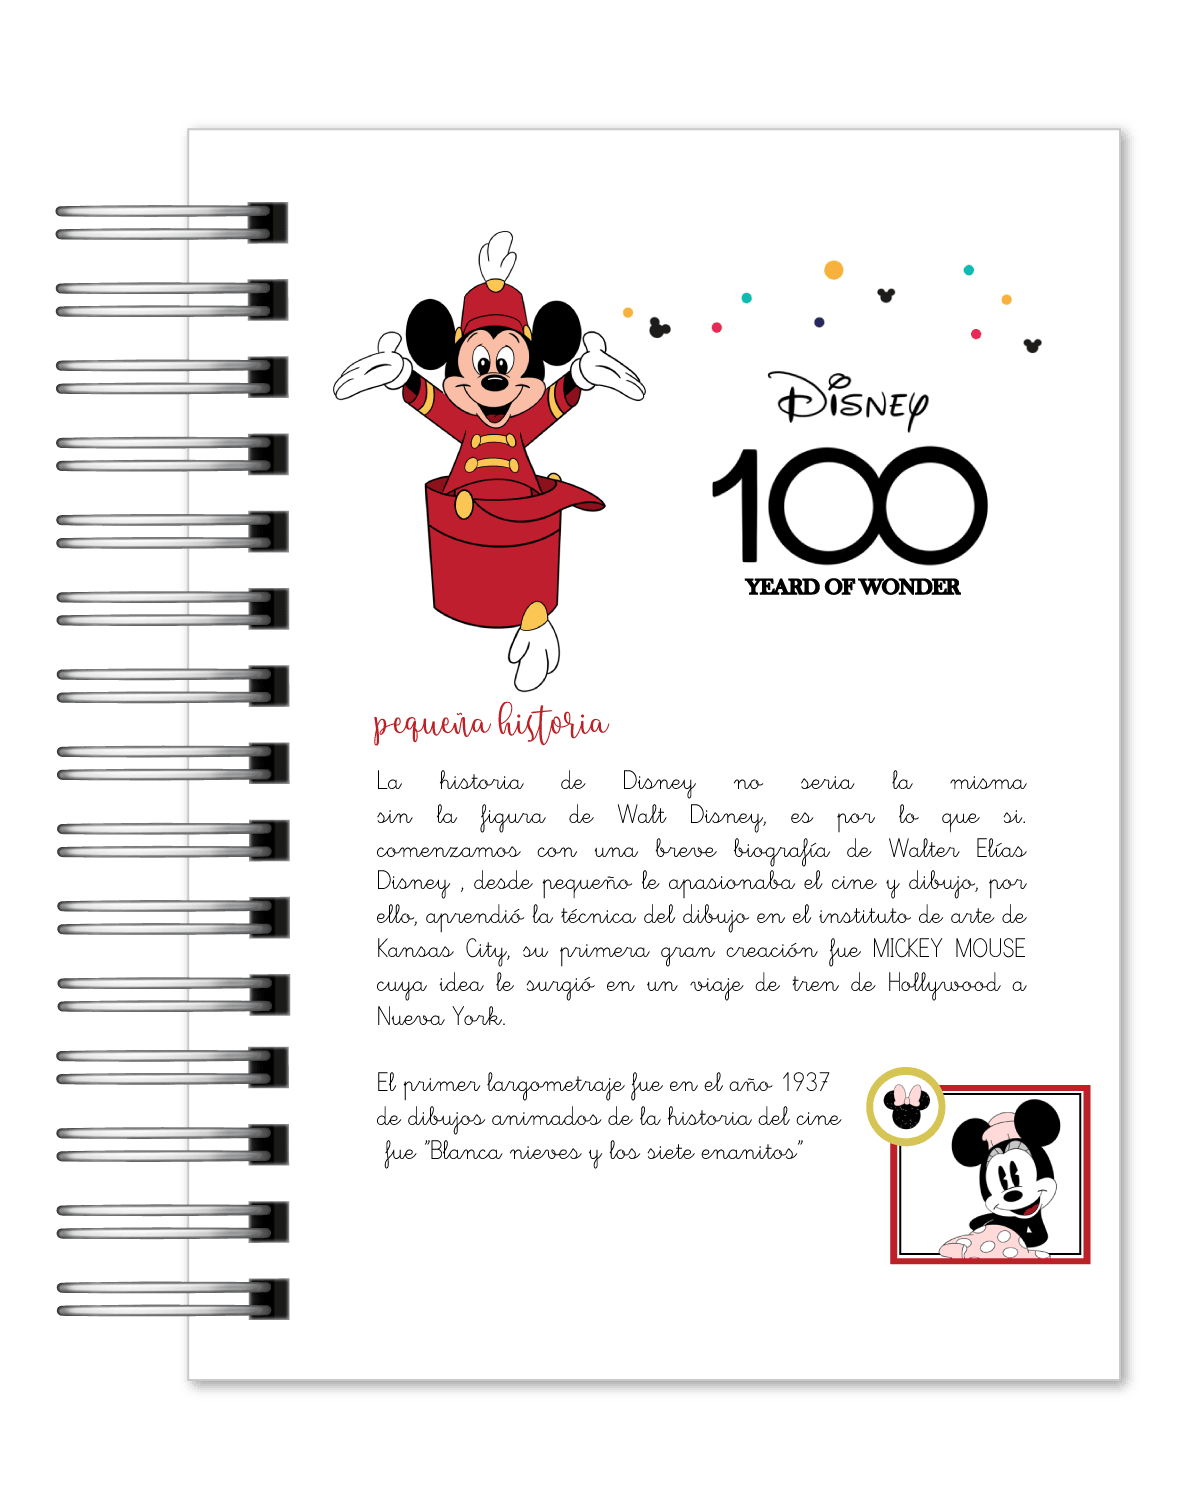 Agenda 2024 Diária Disney 100 Anos Pequena